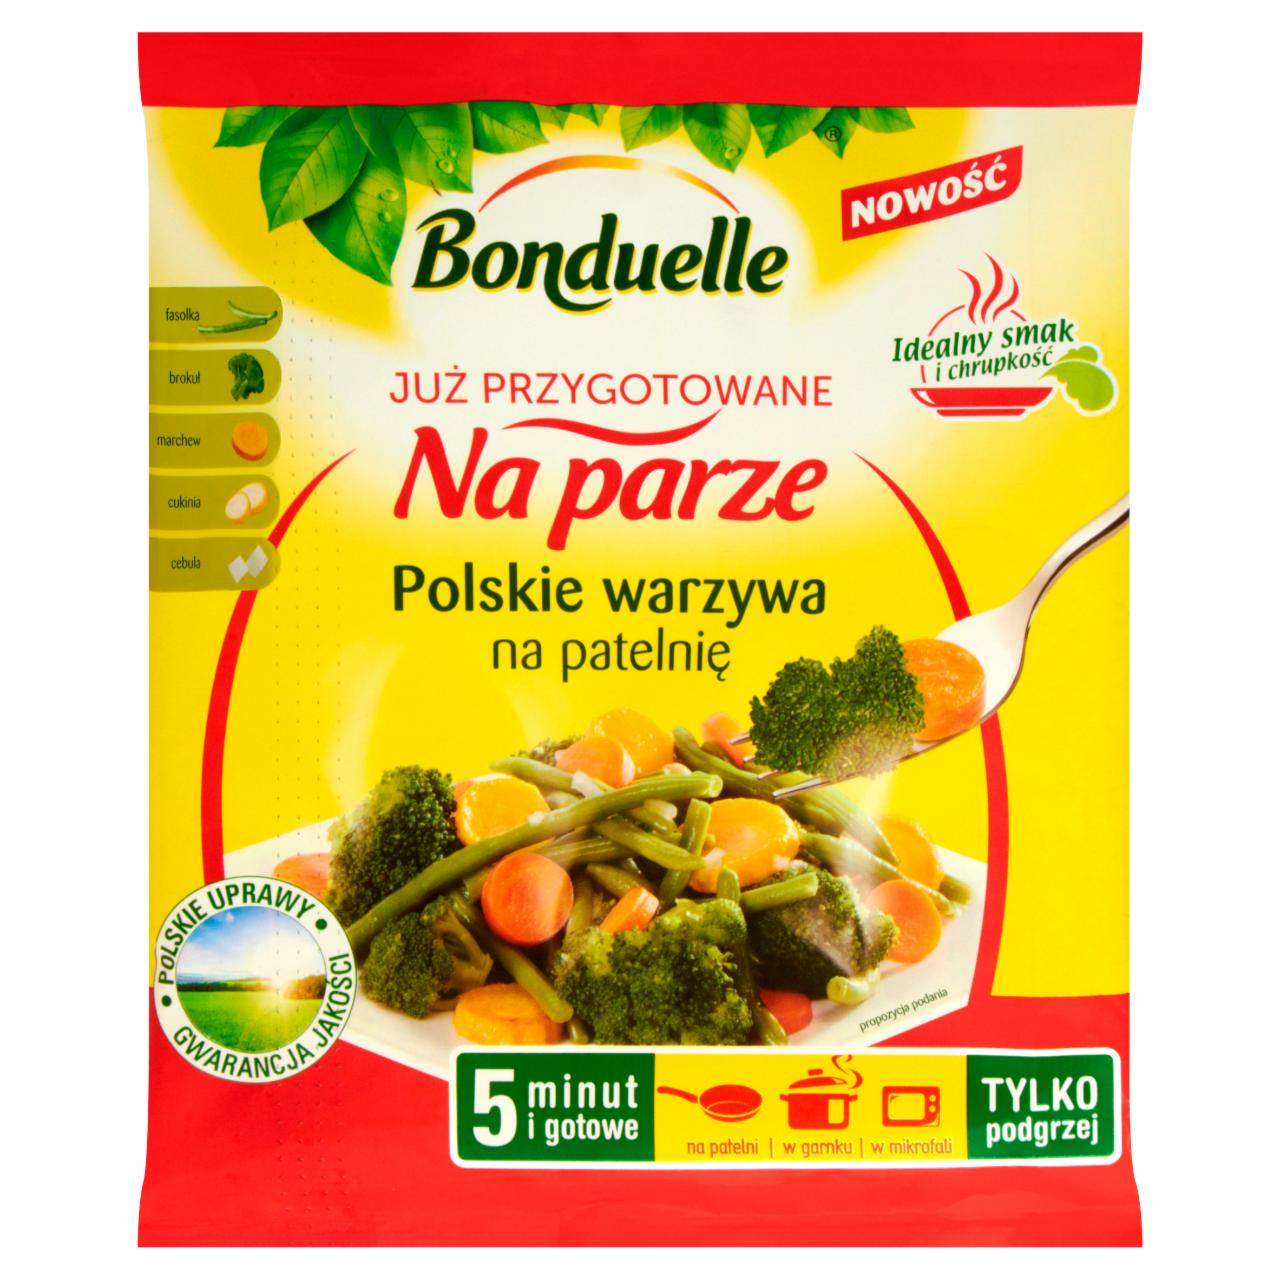 Zdjęcia - Bonduelle Już przygotowane na parze Polskie warzywa na patelnię 400 g